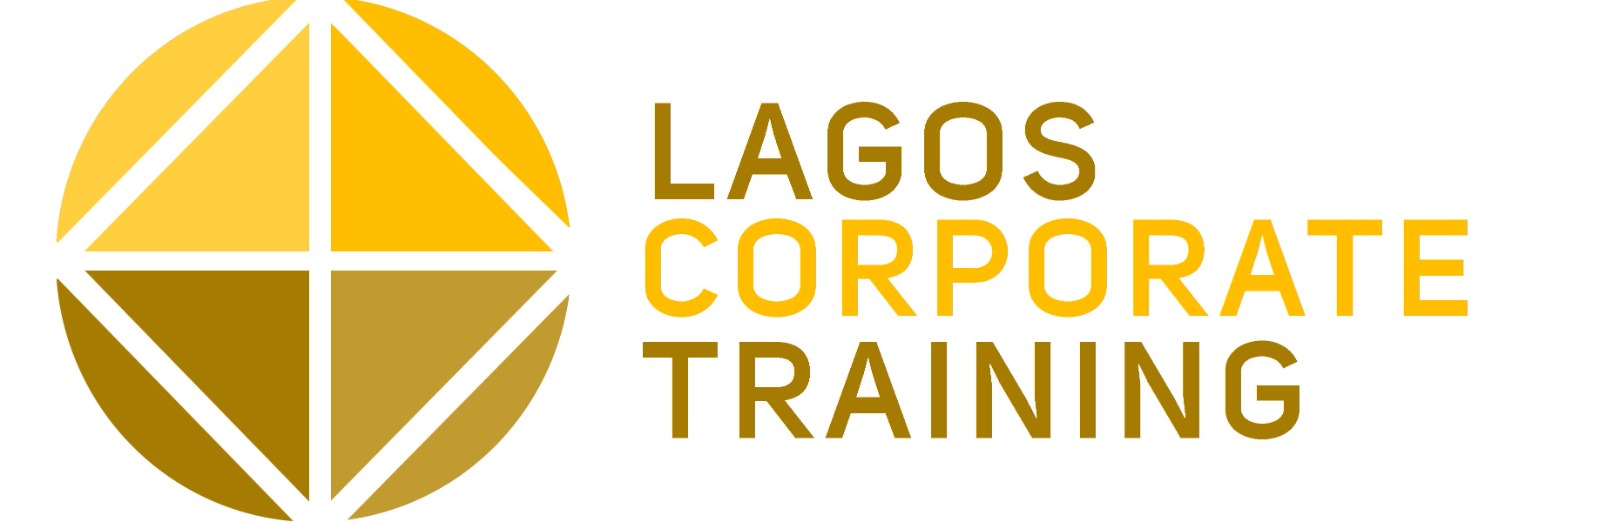 Lagos Corporate Training